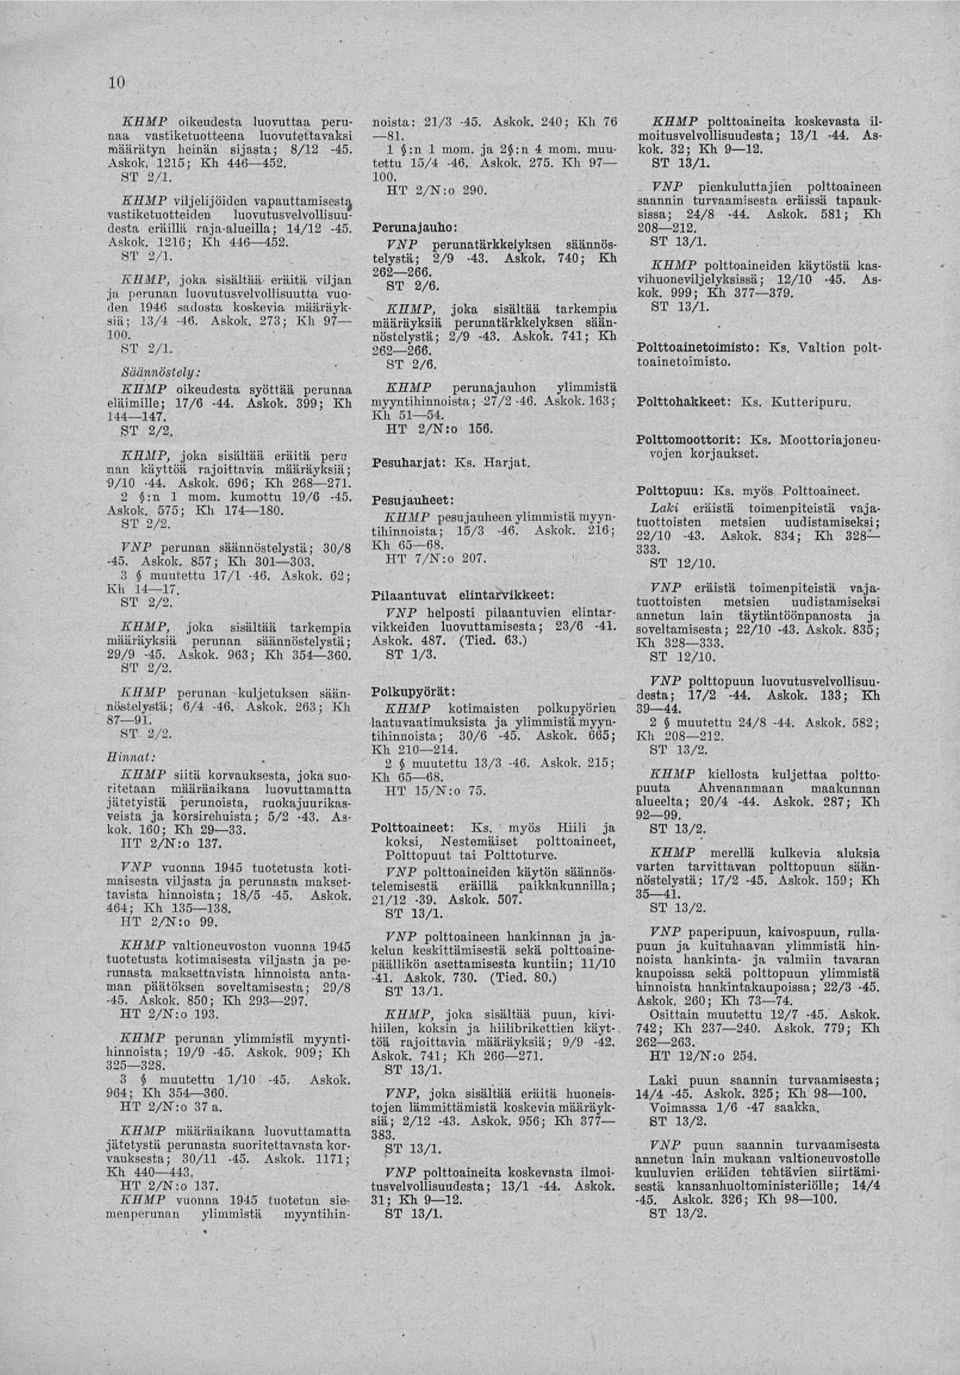 XII MP, joka sisältää eräitä viljan ja perunan luovutusvelvollisuutta vuoden 1946 sadosta koskevia määräyksiä; 13/4-46. Askok. 273; Kh 97 100.